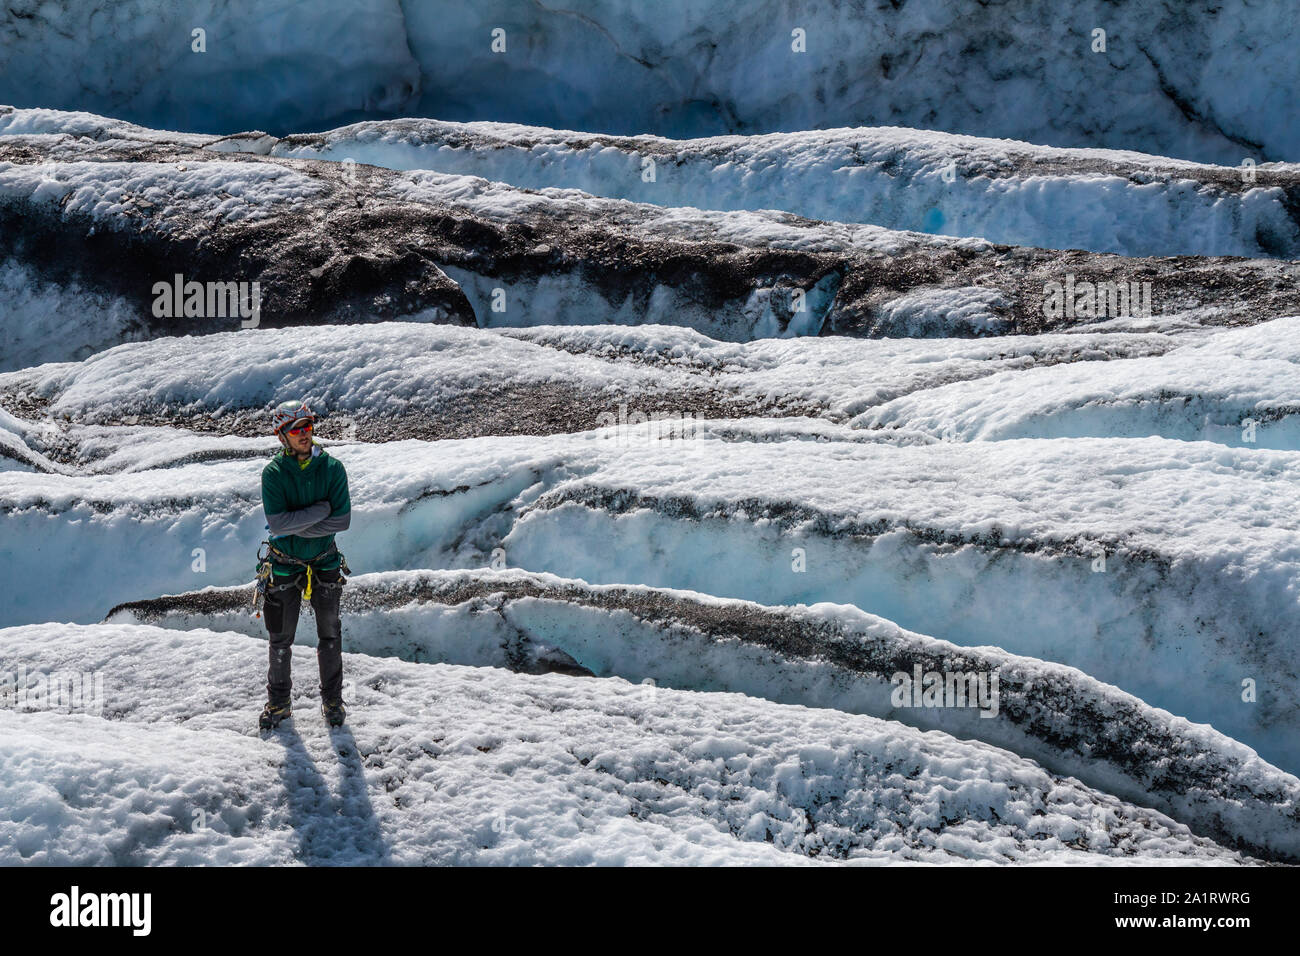 Unter gebrochenem Eis zwischen vielen Gletscherspalten, ein Führer in einer grünen Jacke steht stoisch mit verschränkten Armen. Stockfoto